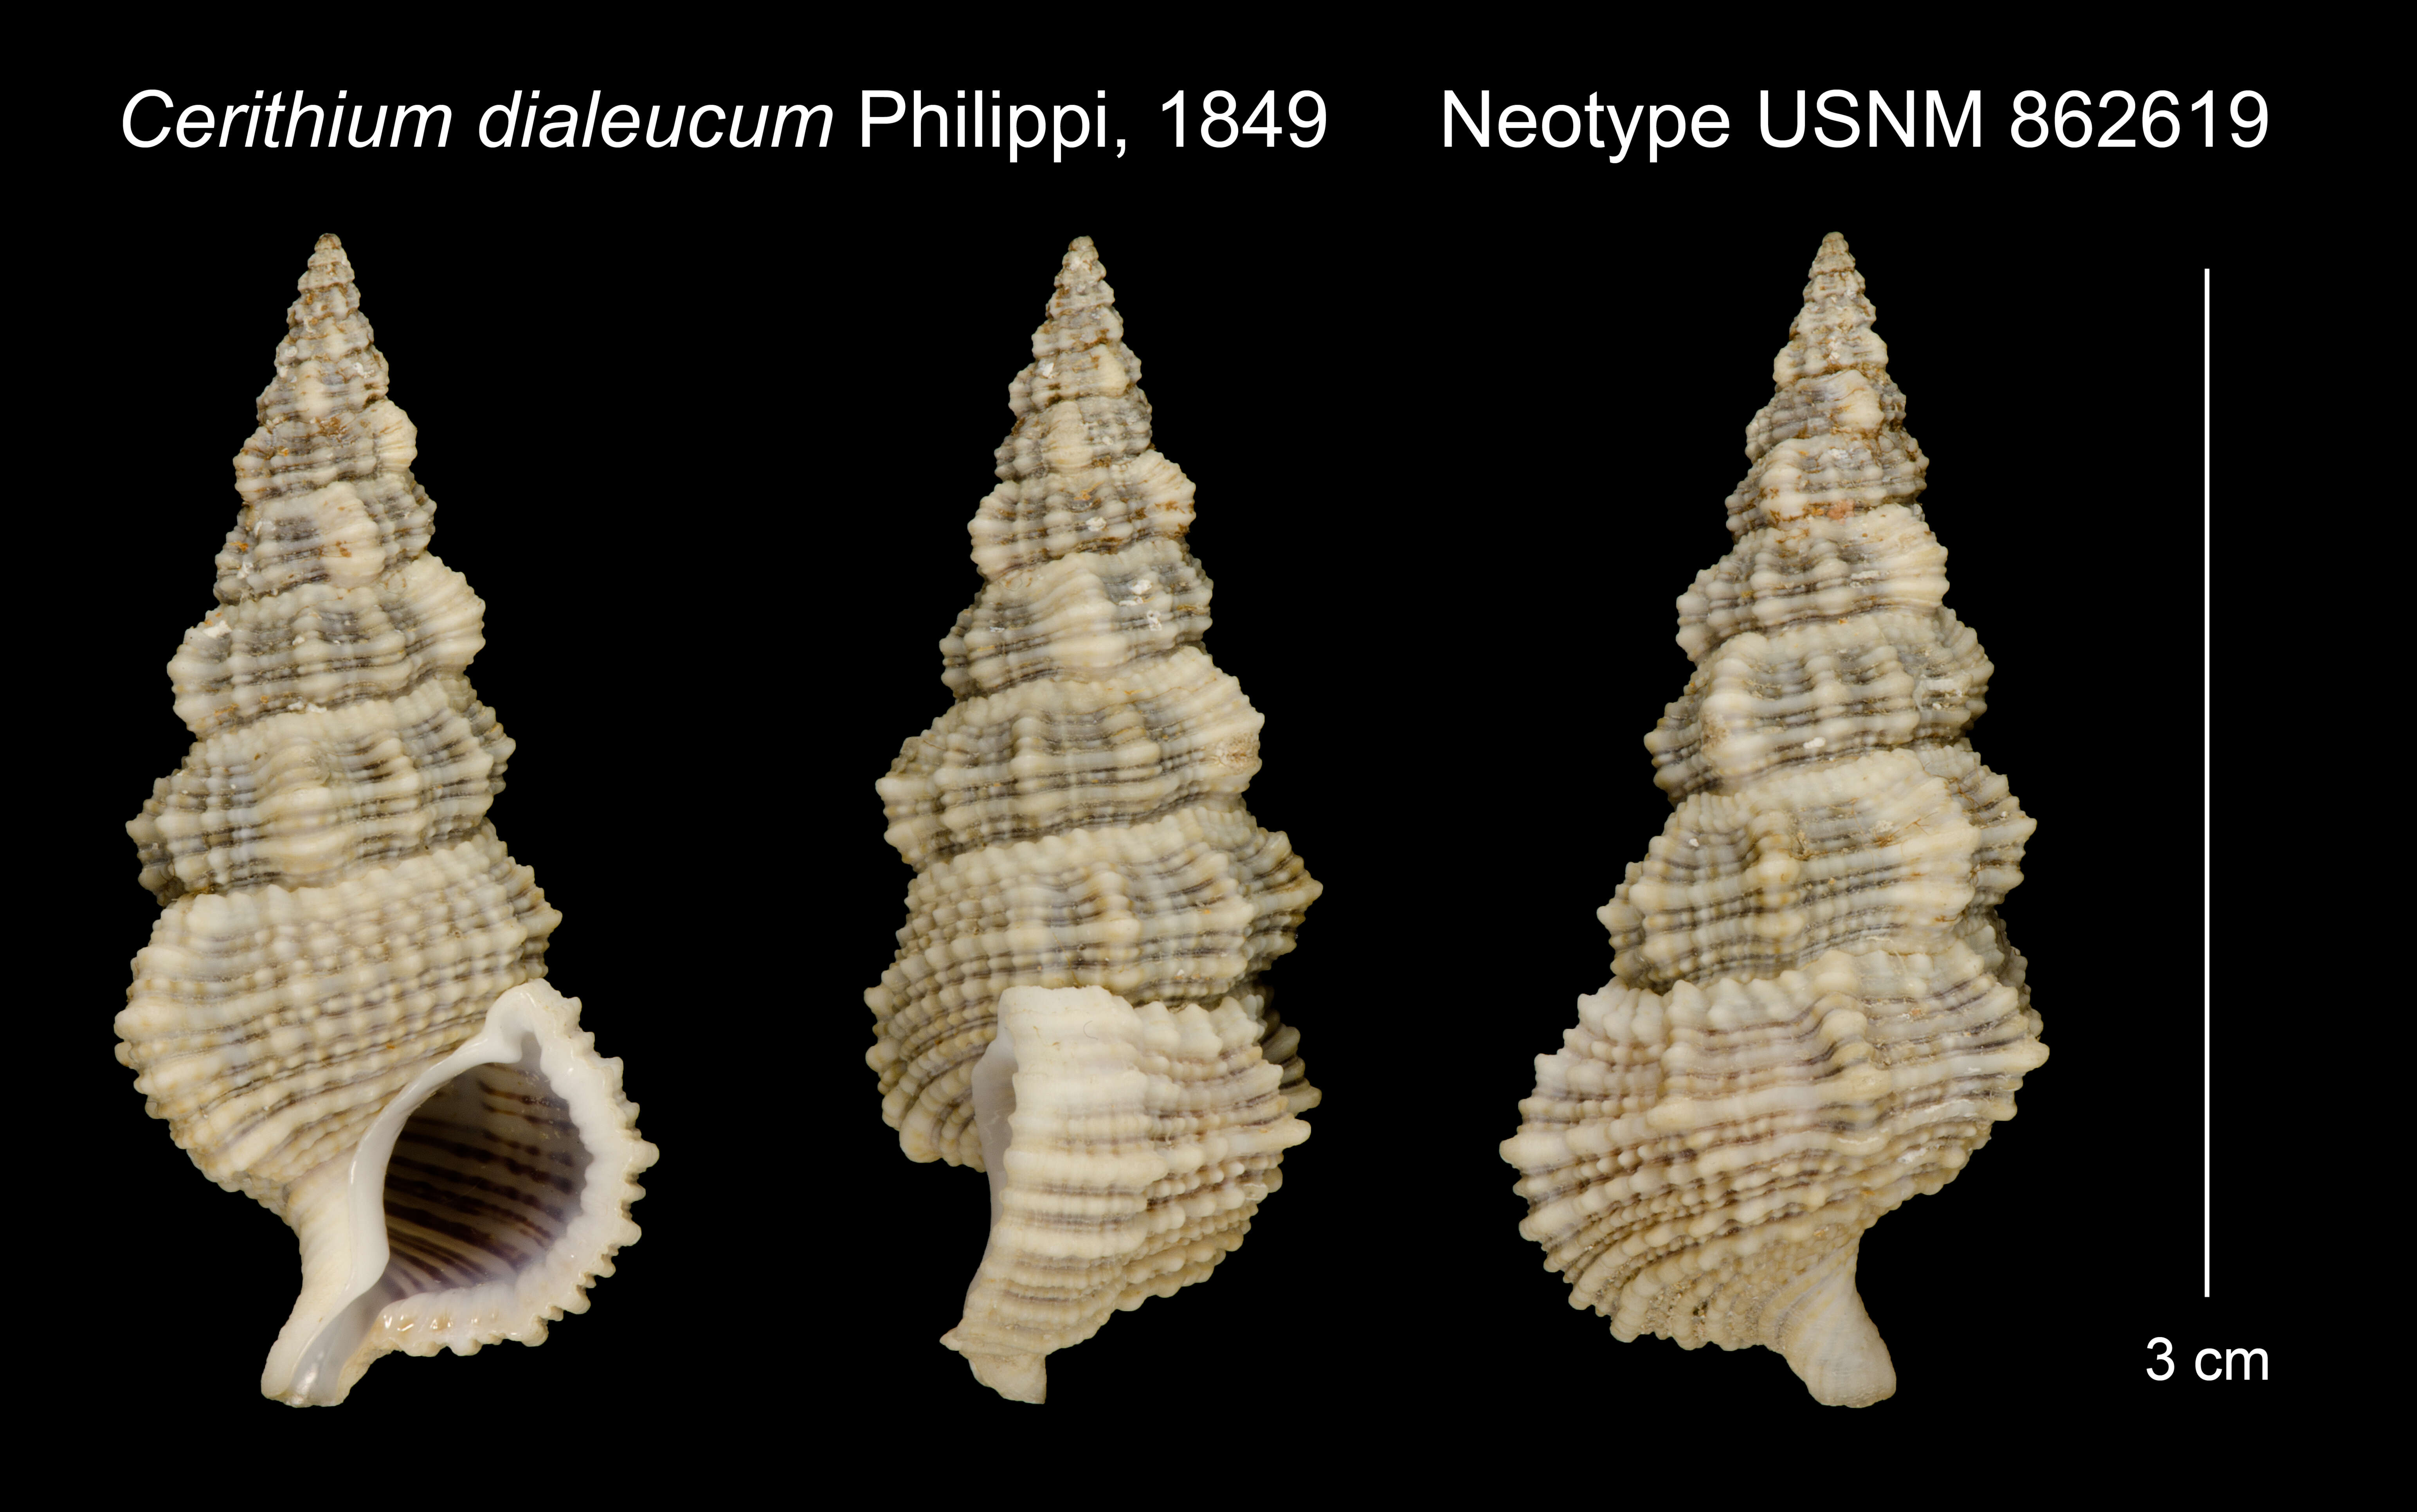 Image of Cerithium dialeucum Philippi 1849